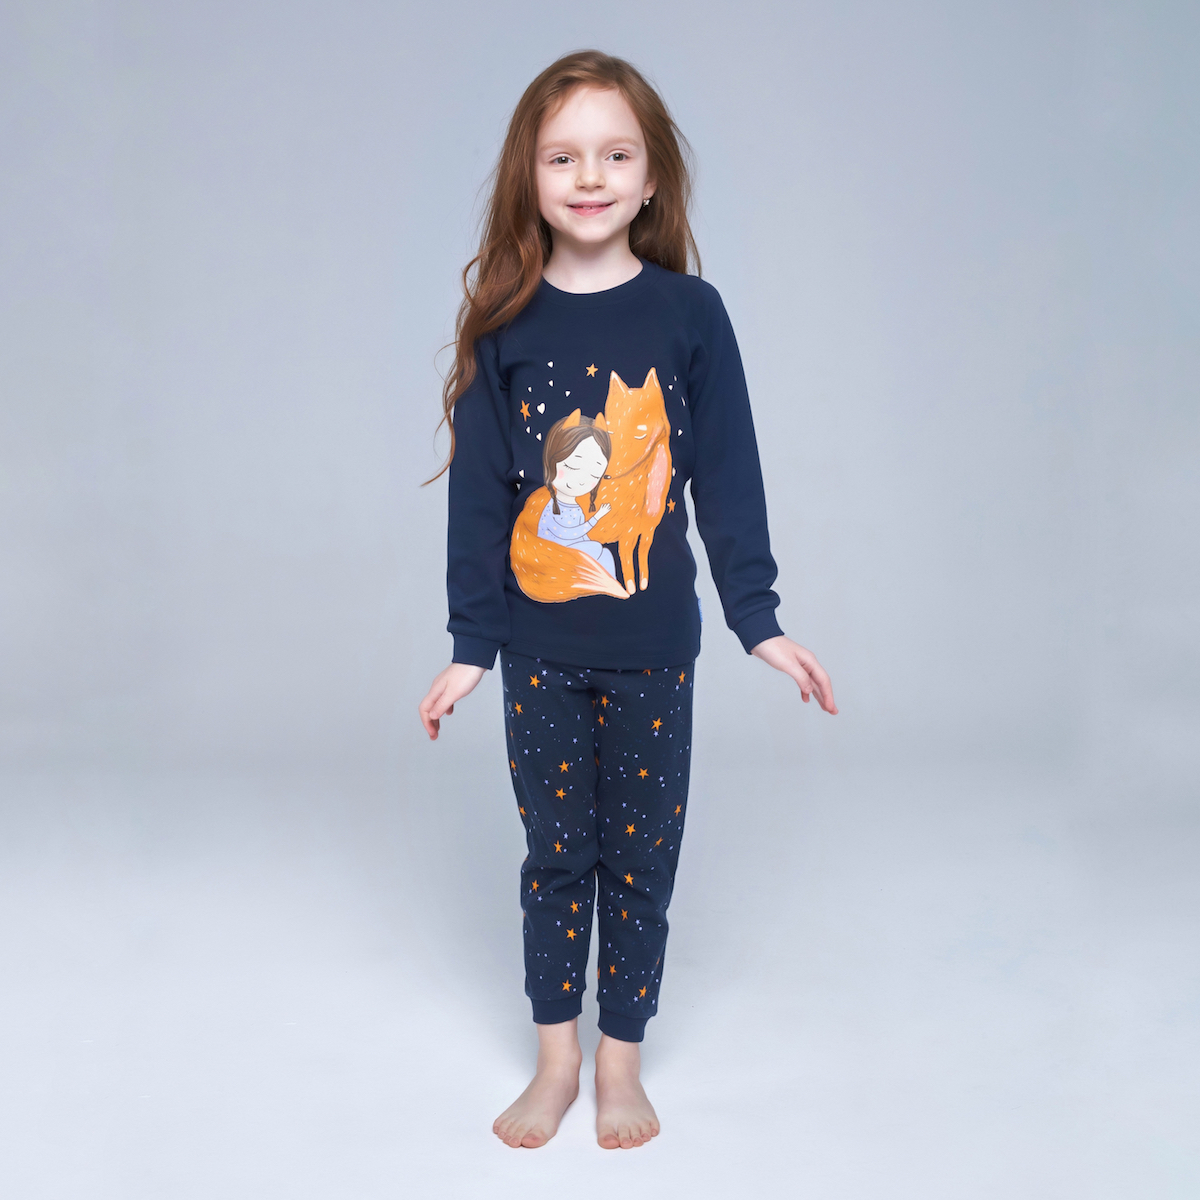 Пижамы для девочек - купить в интернет-магазине Детский мир